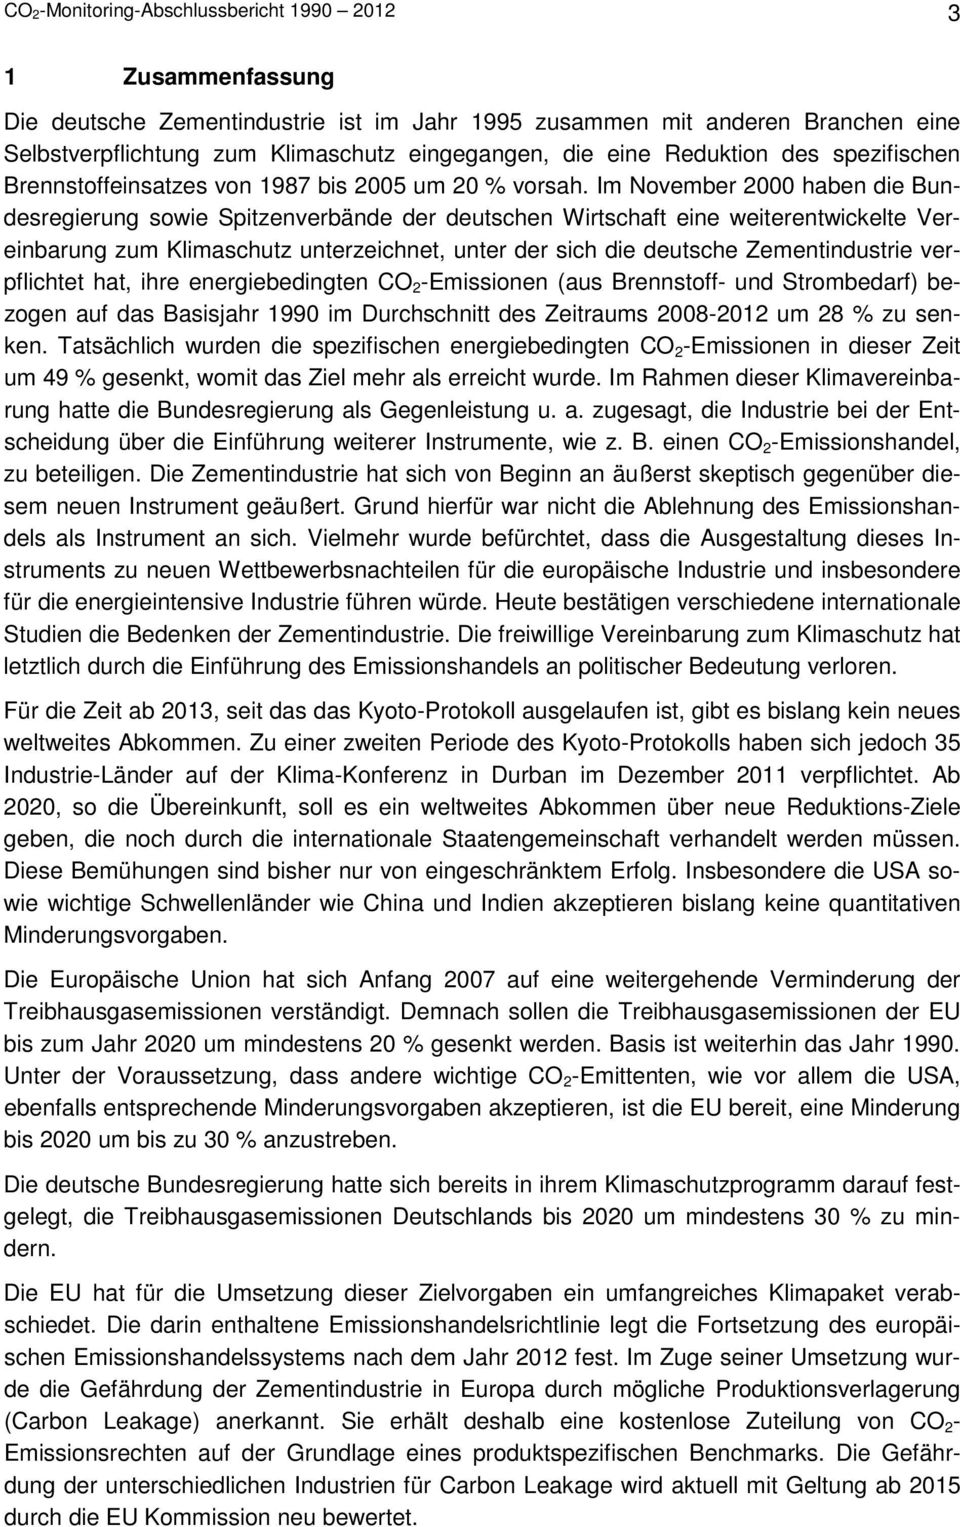 Im November 2000 haben die Bundesregierung sowie Spitzenverbände der deutschen Wirtschaft eine weiterentwickelte Vereinbarung zum Klimaschutz unterzeichnet, unter der sich die deutsche